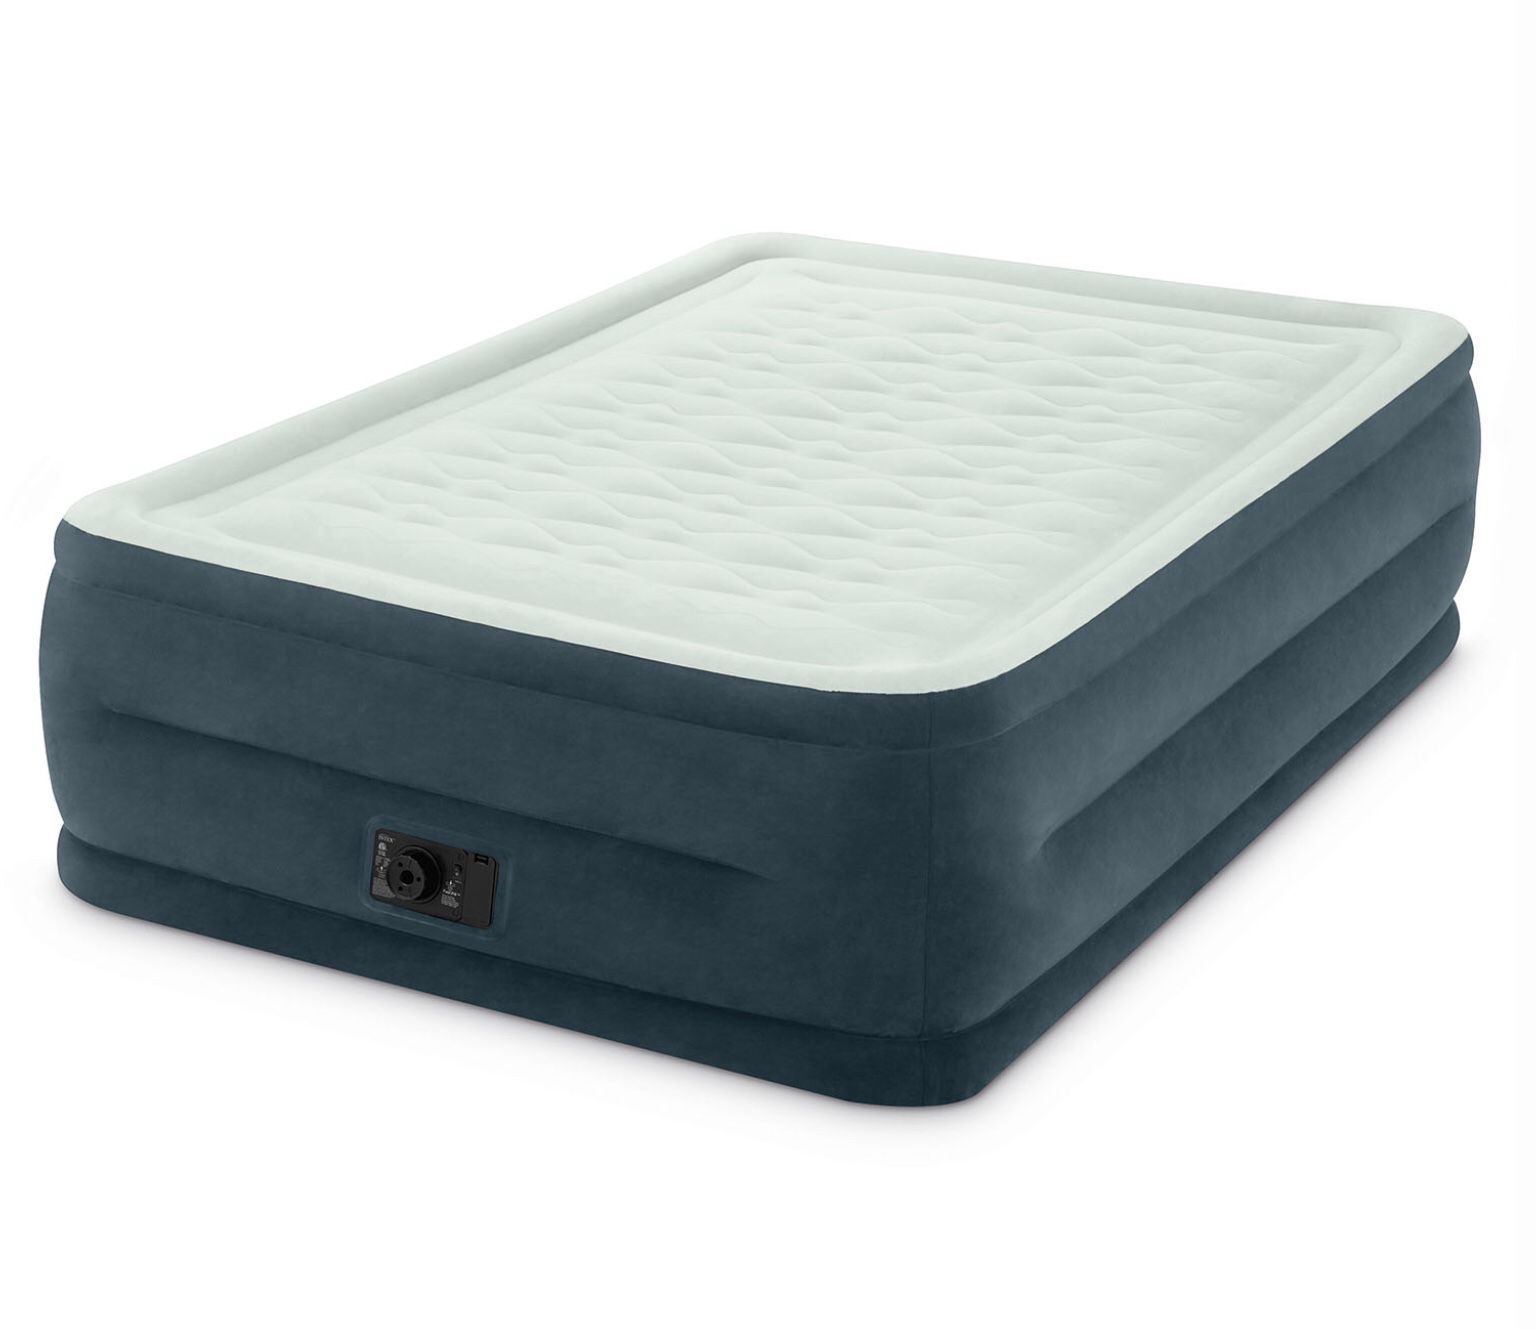 Intel Queen Sized air mattress